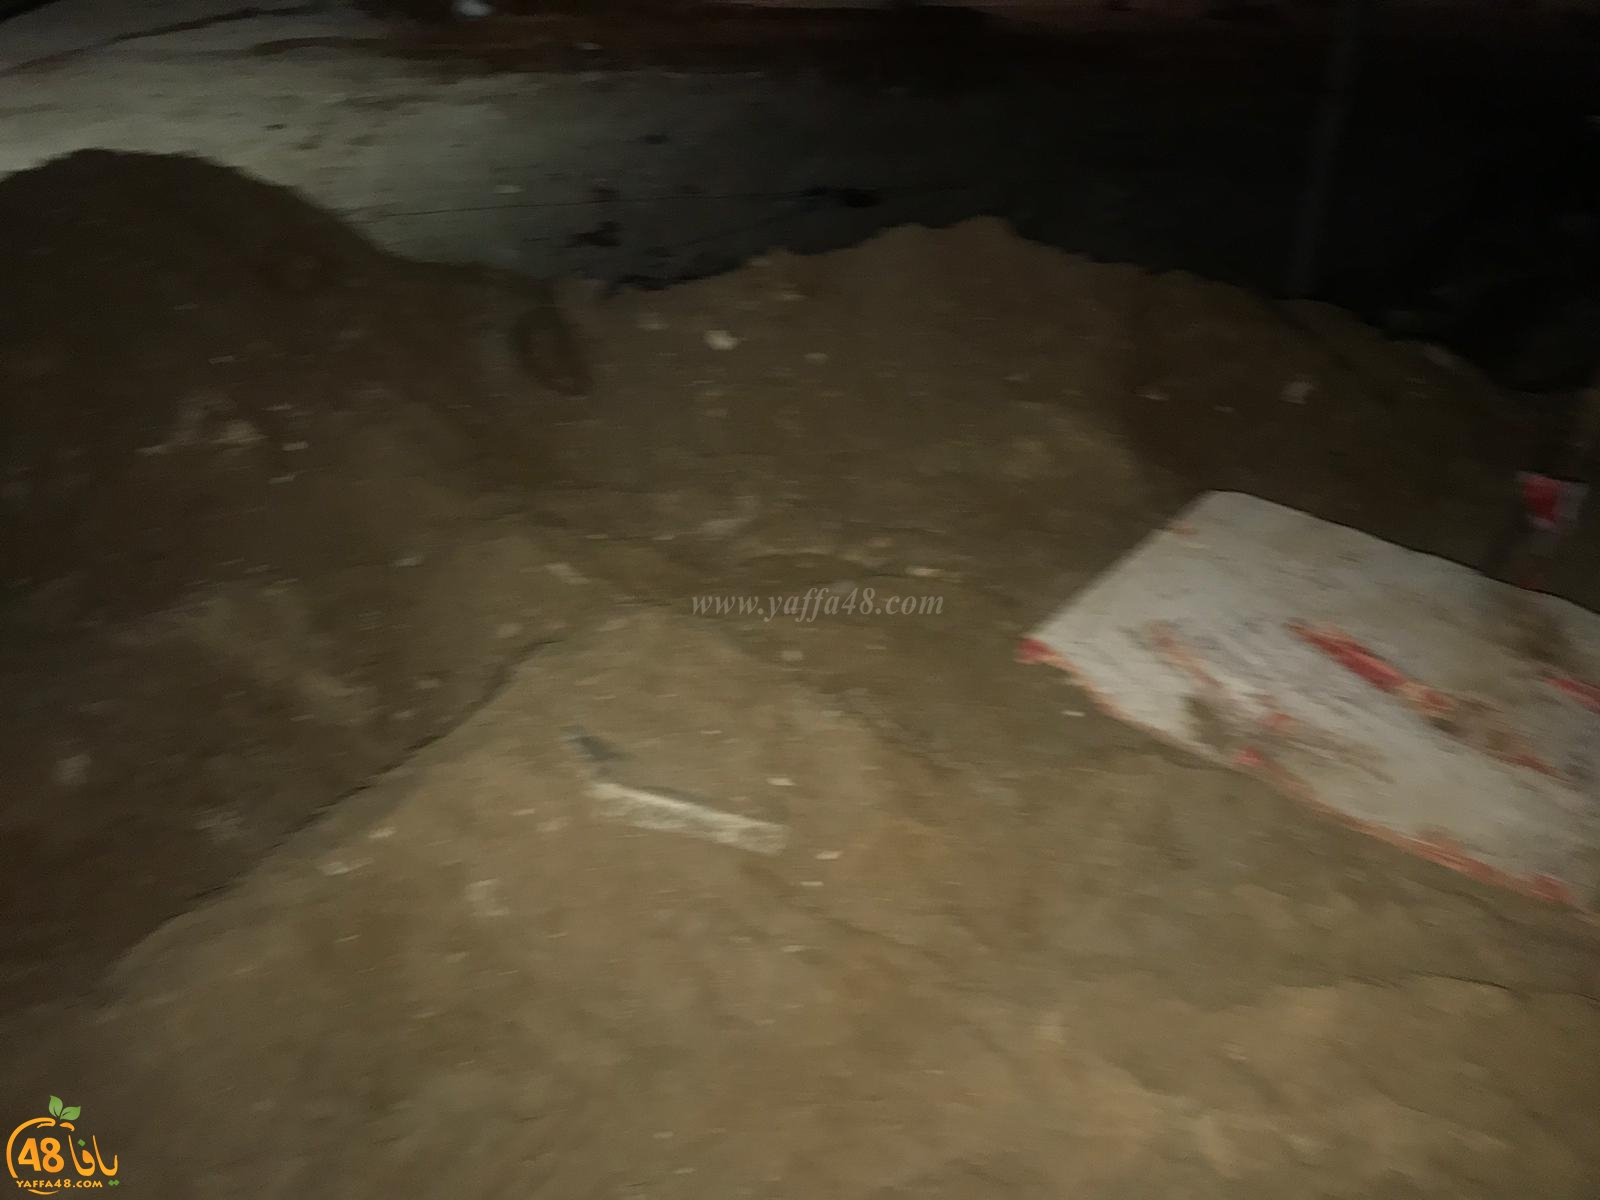  بالفيديو: نبش آخر لقبور المسلمين بالقرب من مقبرة الاسعاف في مدينة يافا